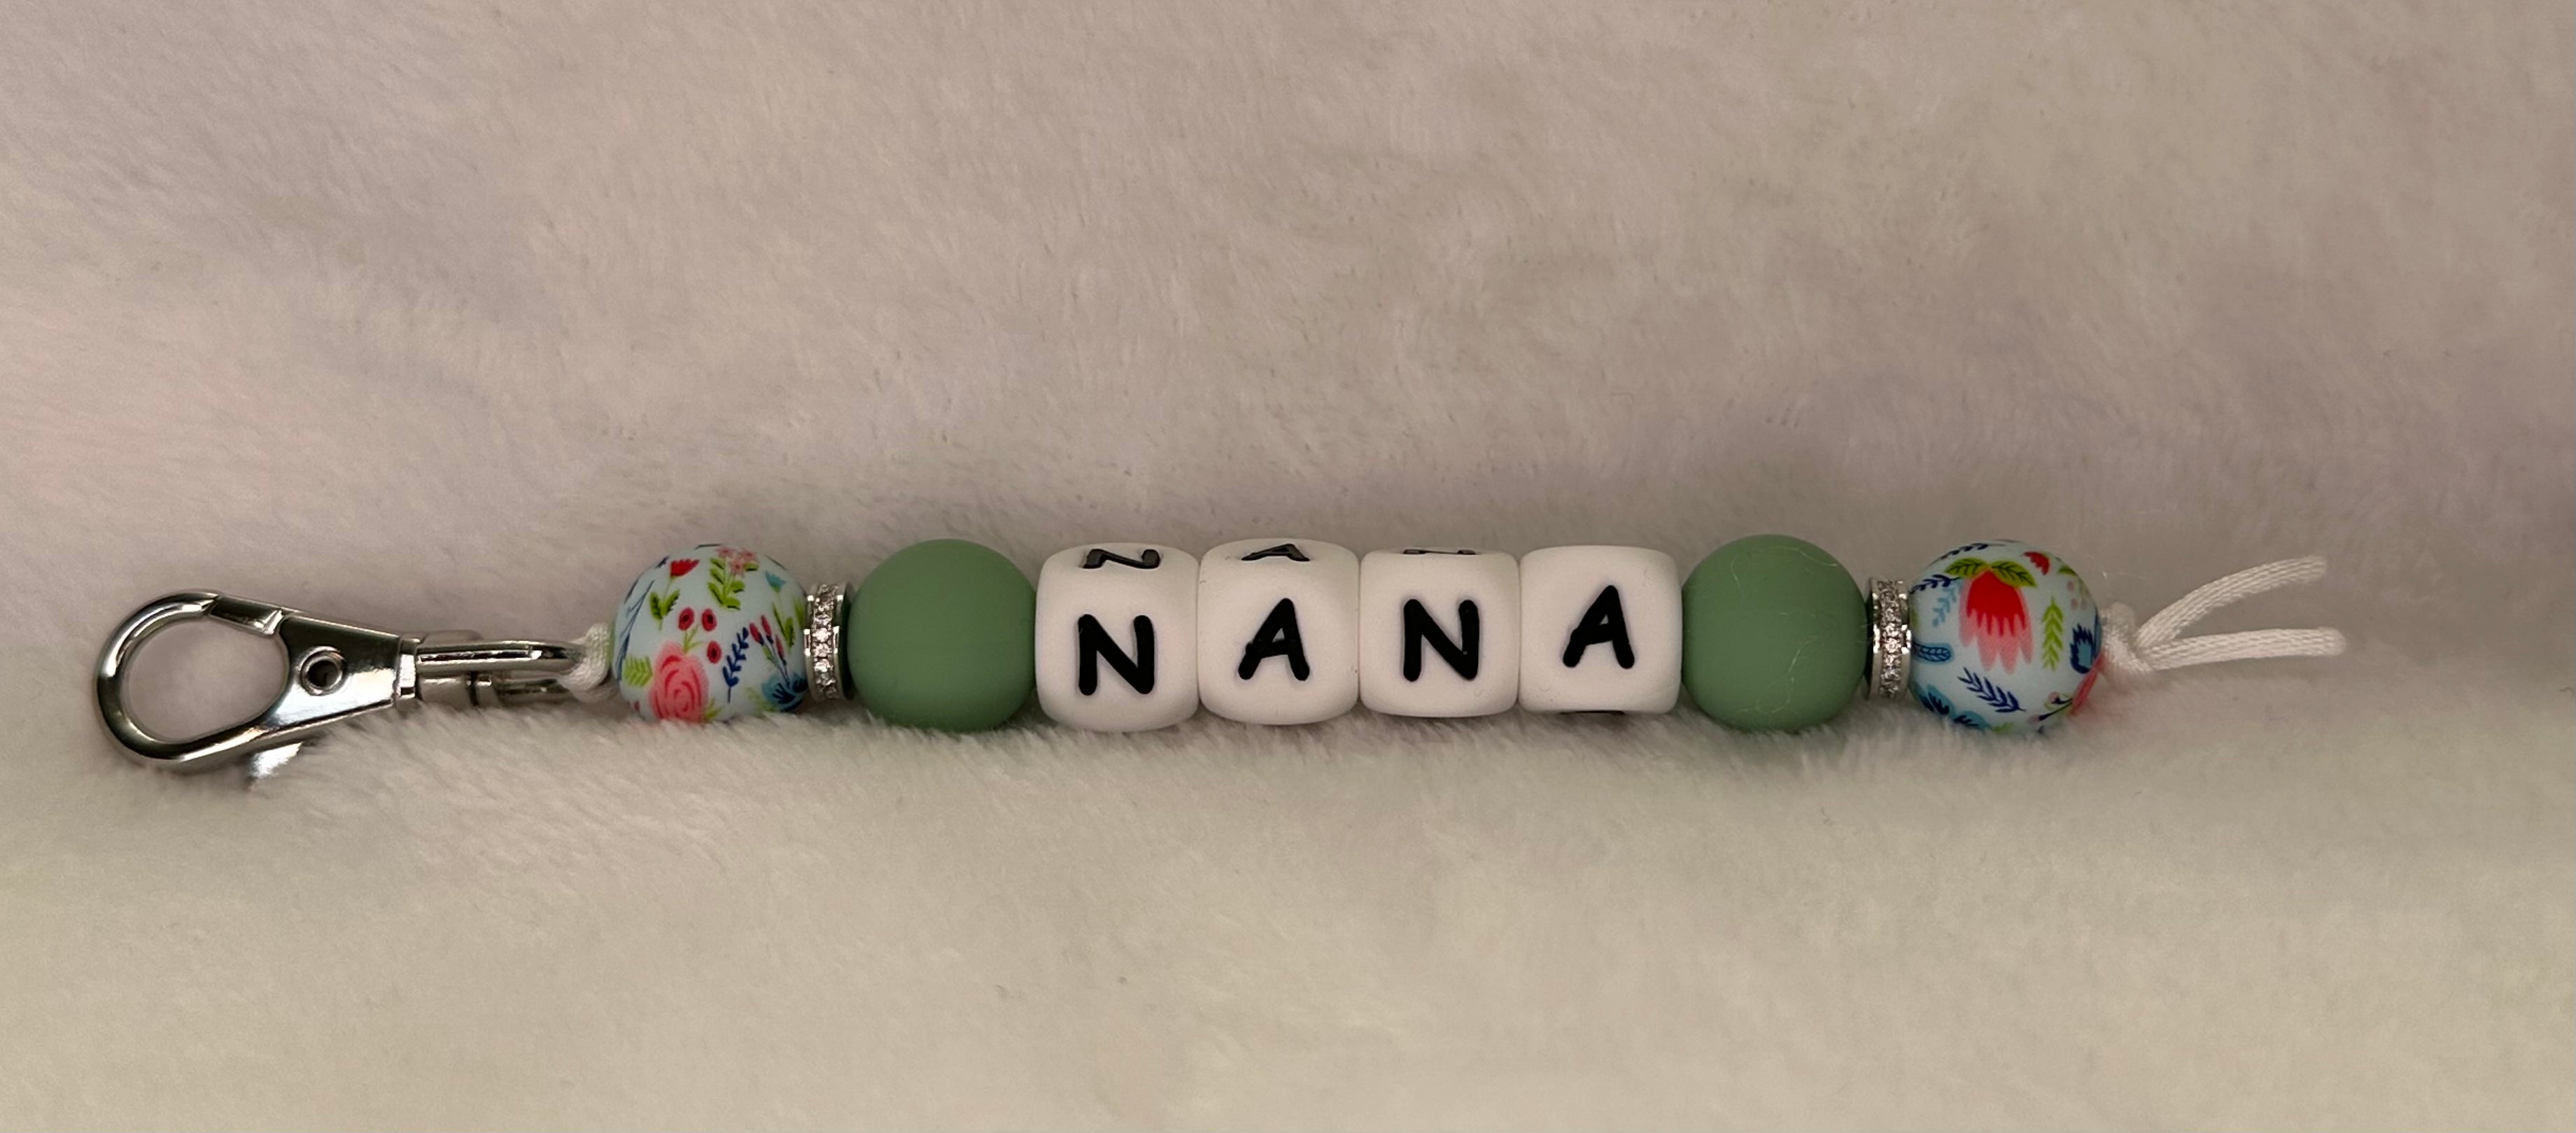 Nana keychain